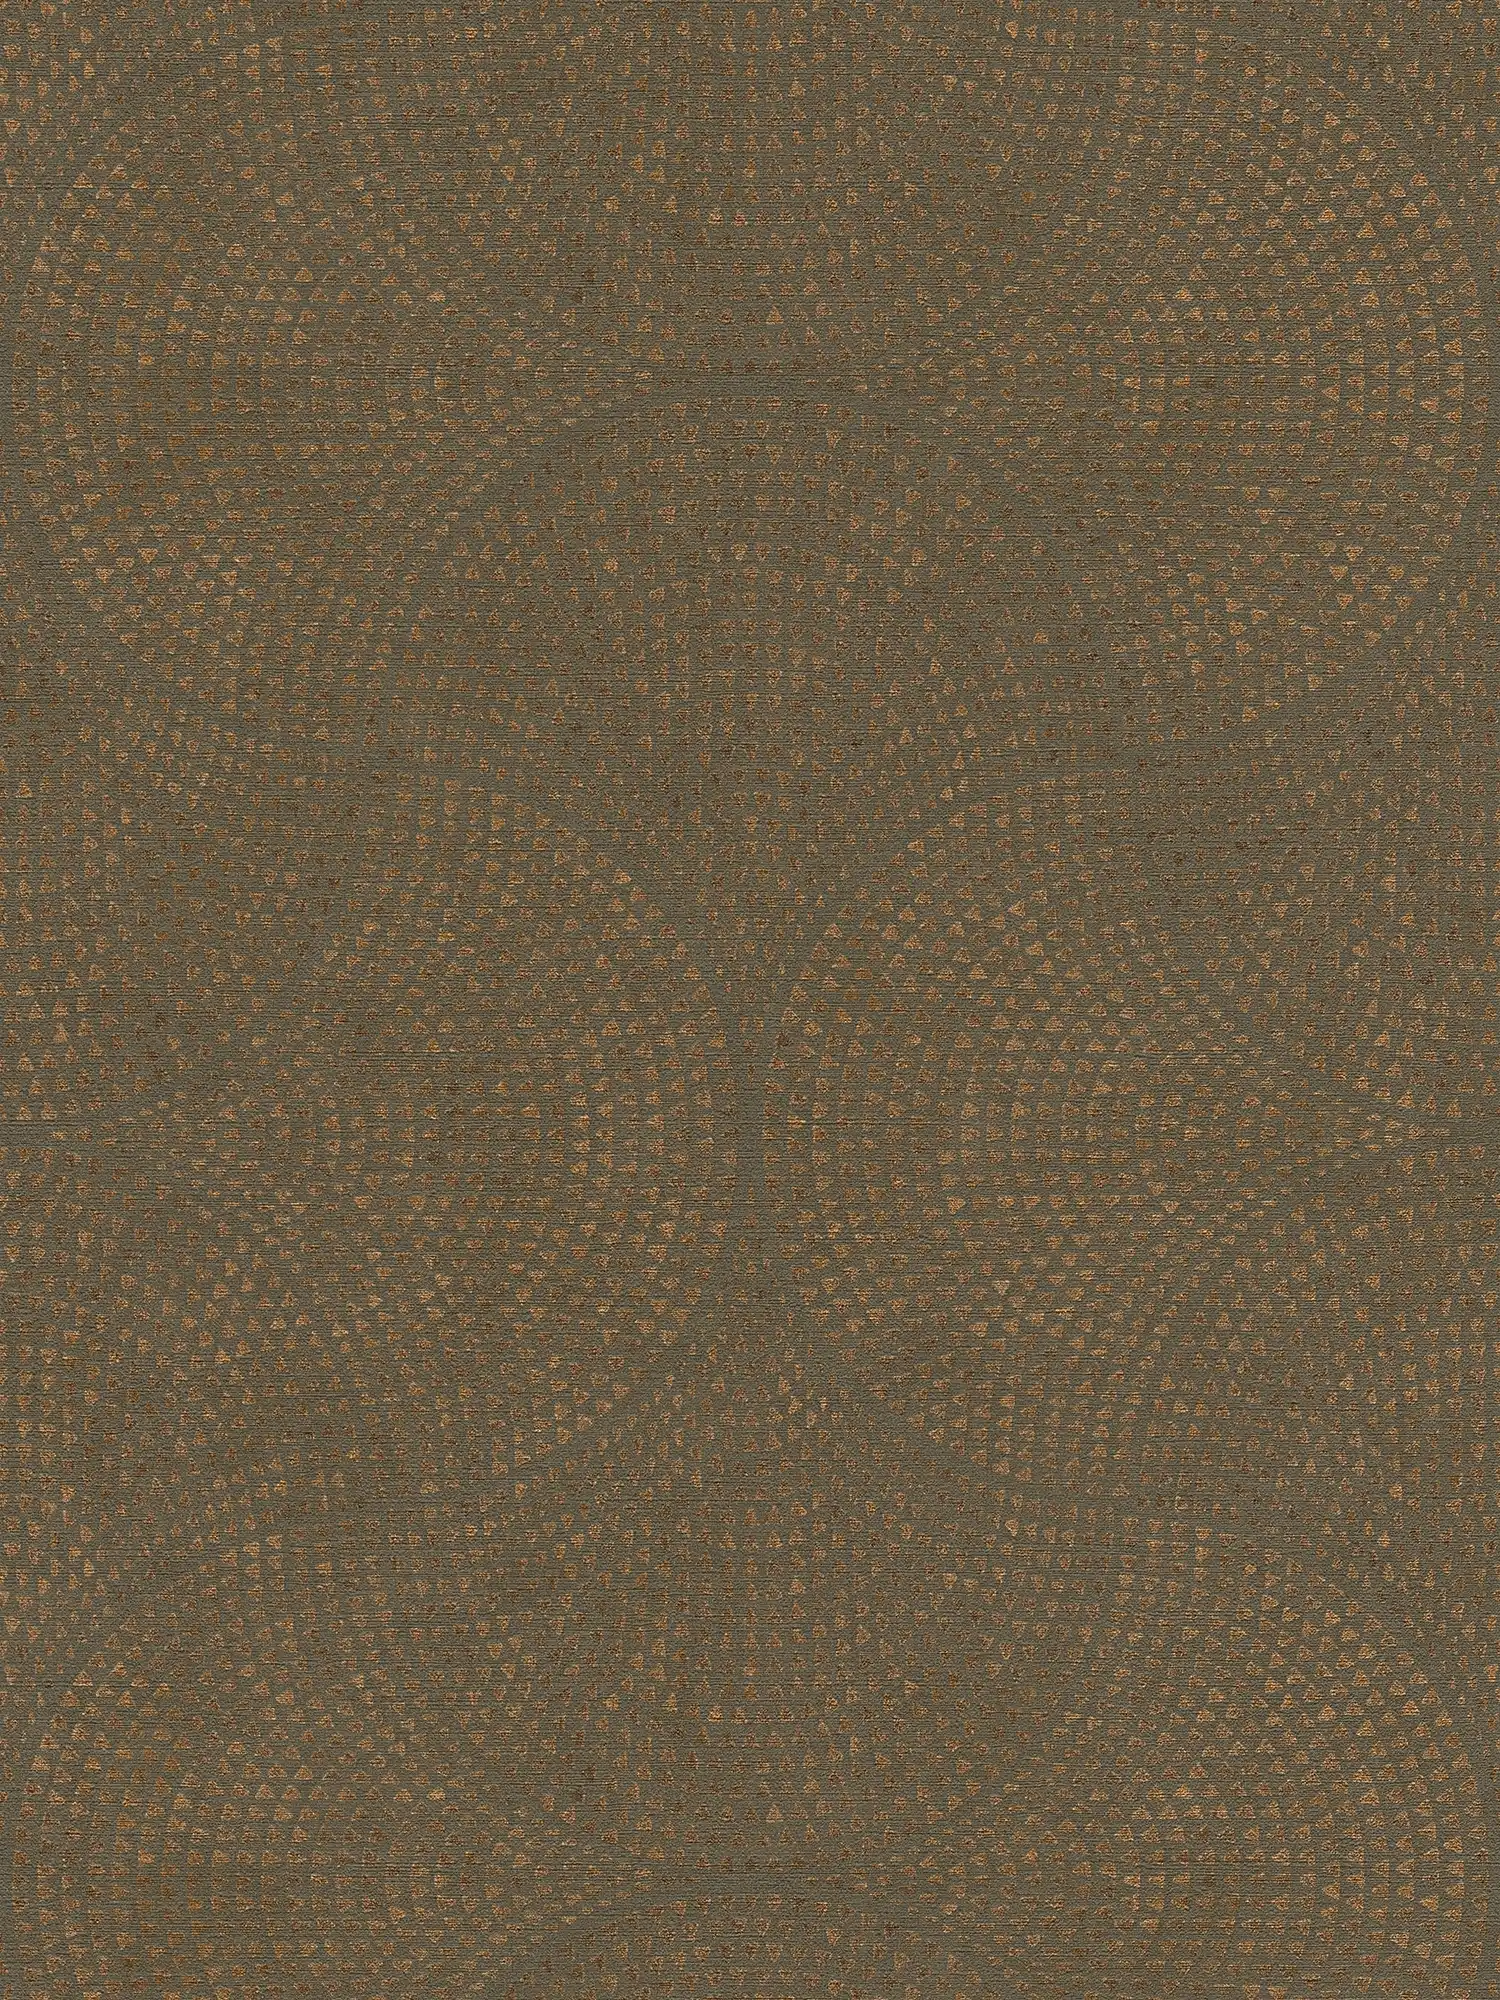 Bruin behangpapier met koperpatroon in mozaïekstijl - bruin, metallic
